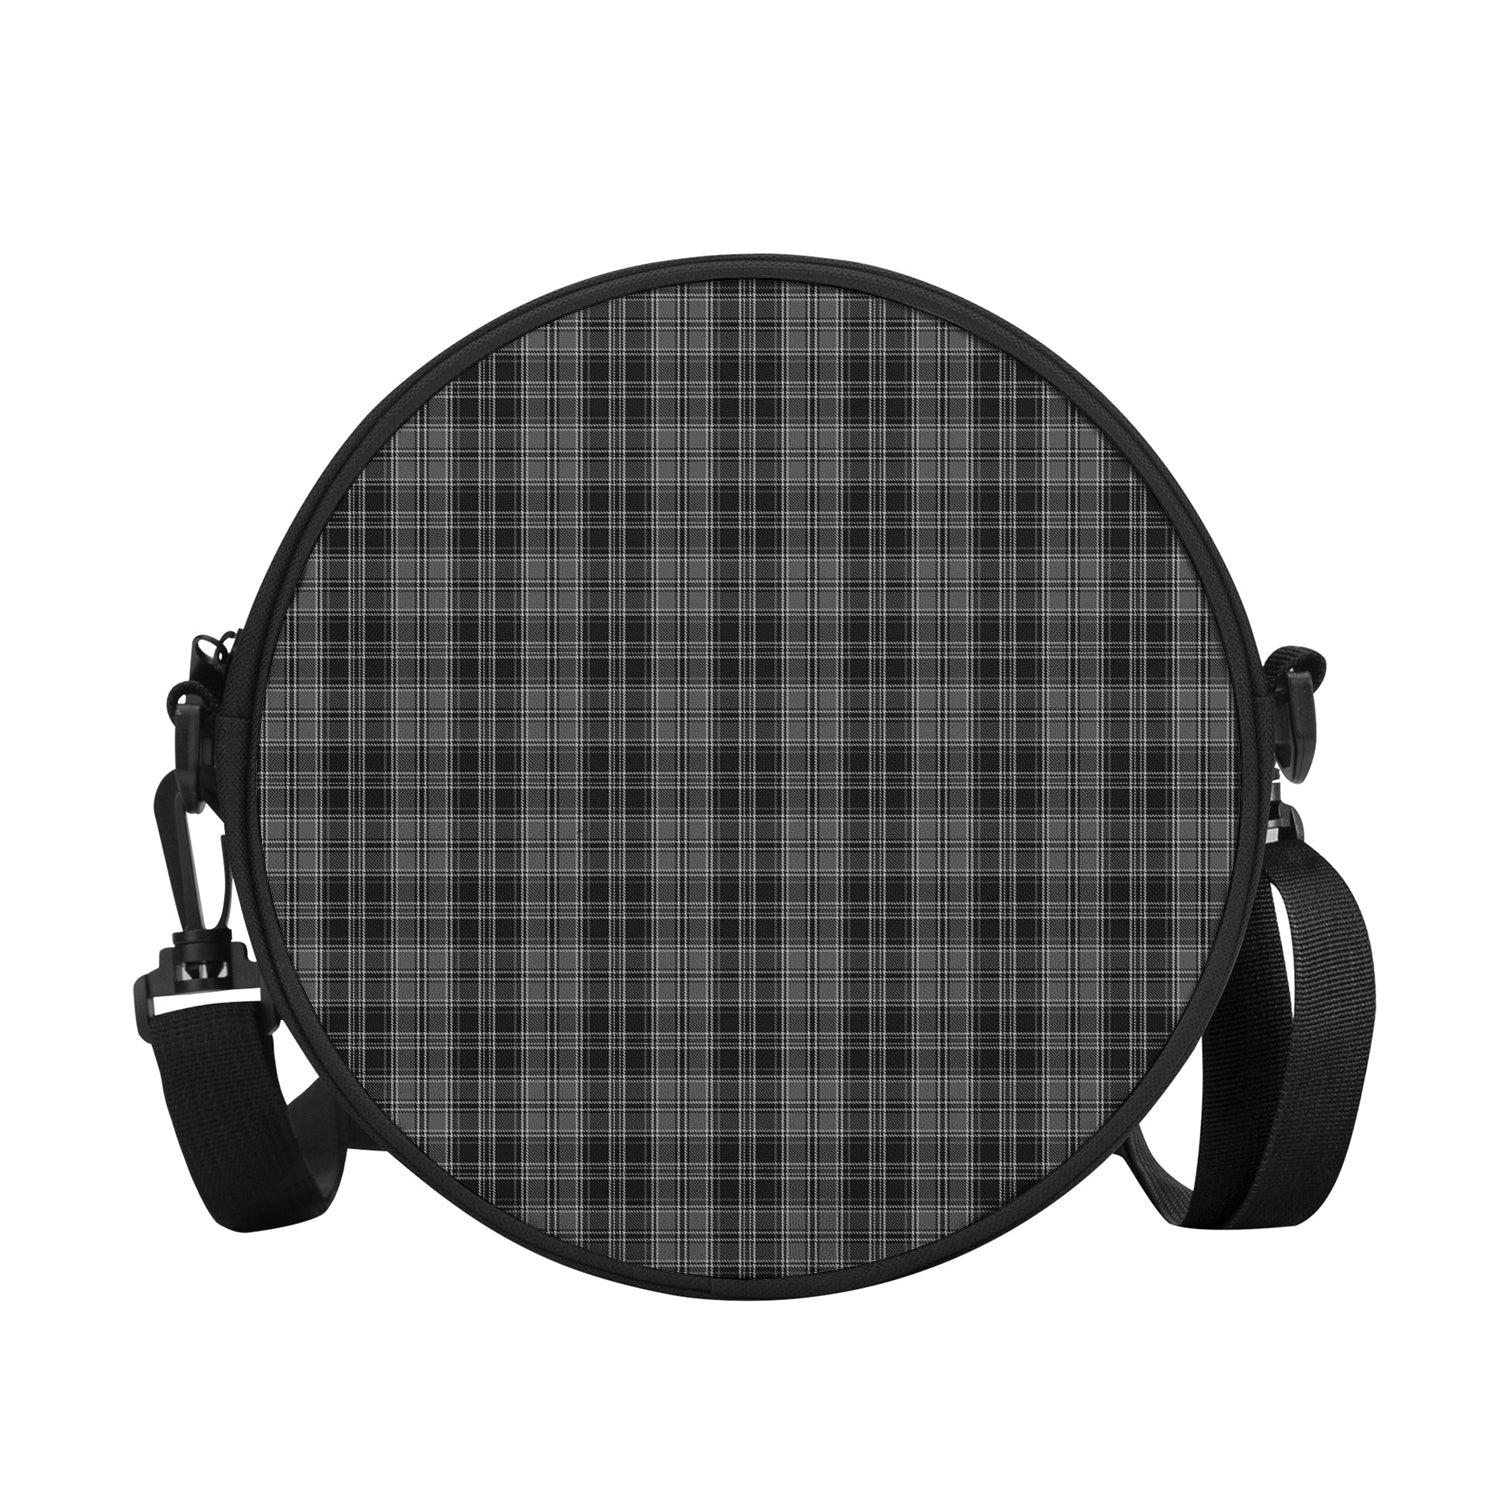 drummond-grey-tartan-round-satchel-bags